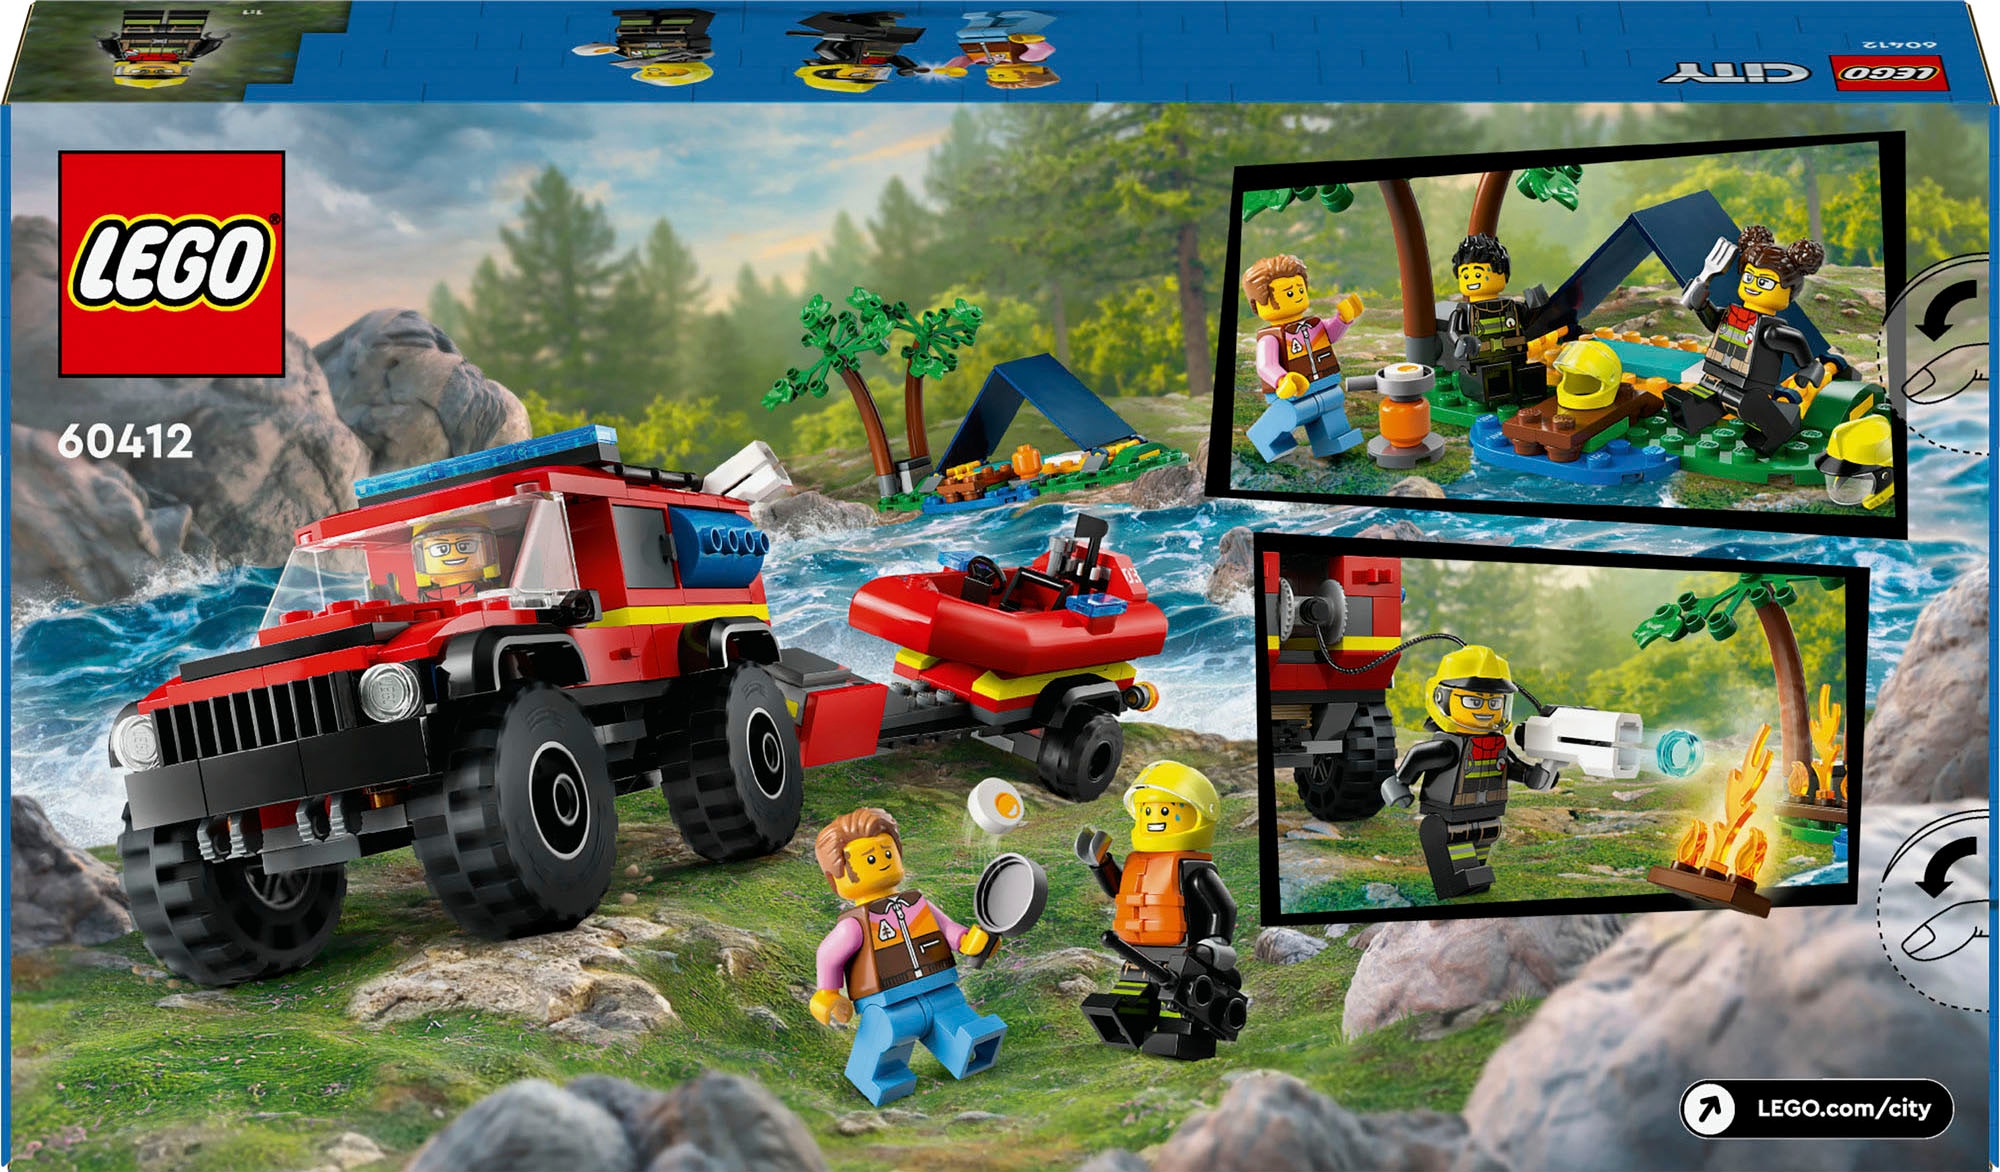 LEGO® Konstruktionsspielsteine »Feuerwehrgeländewagen mit Rettungsboot (60412), LEGO City«, (301 St.), Made in Europe